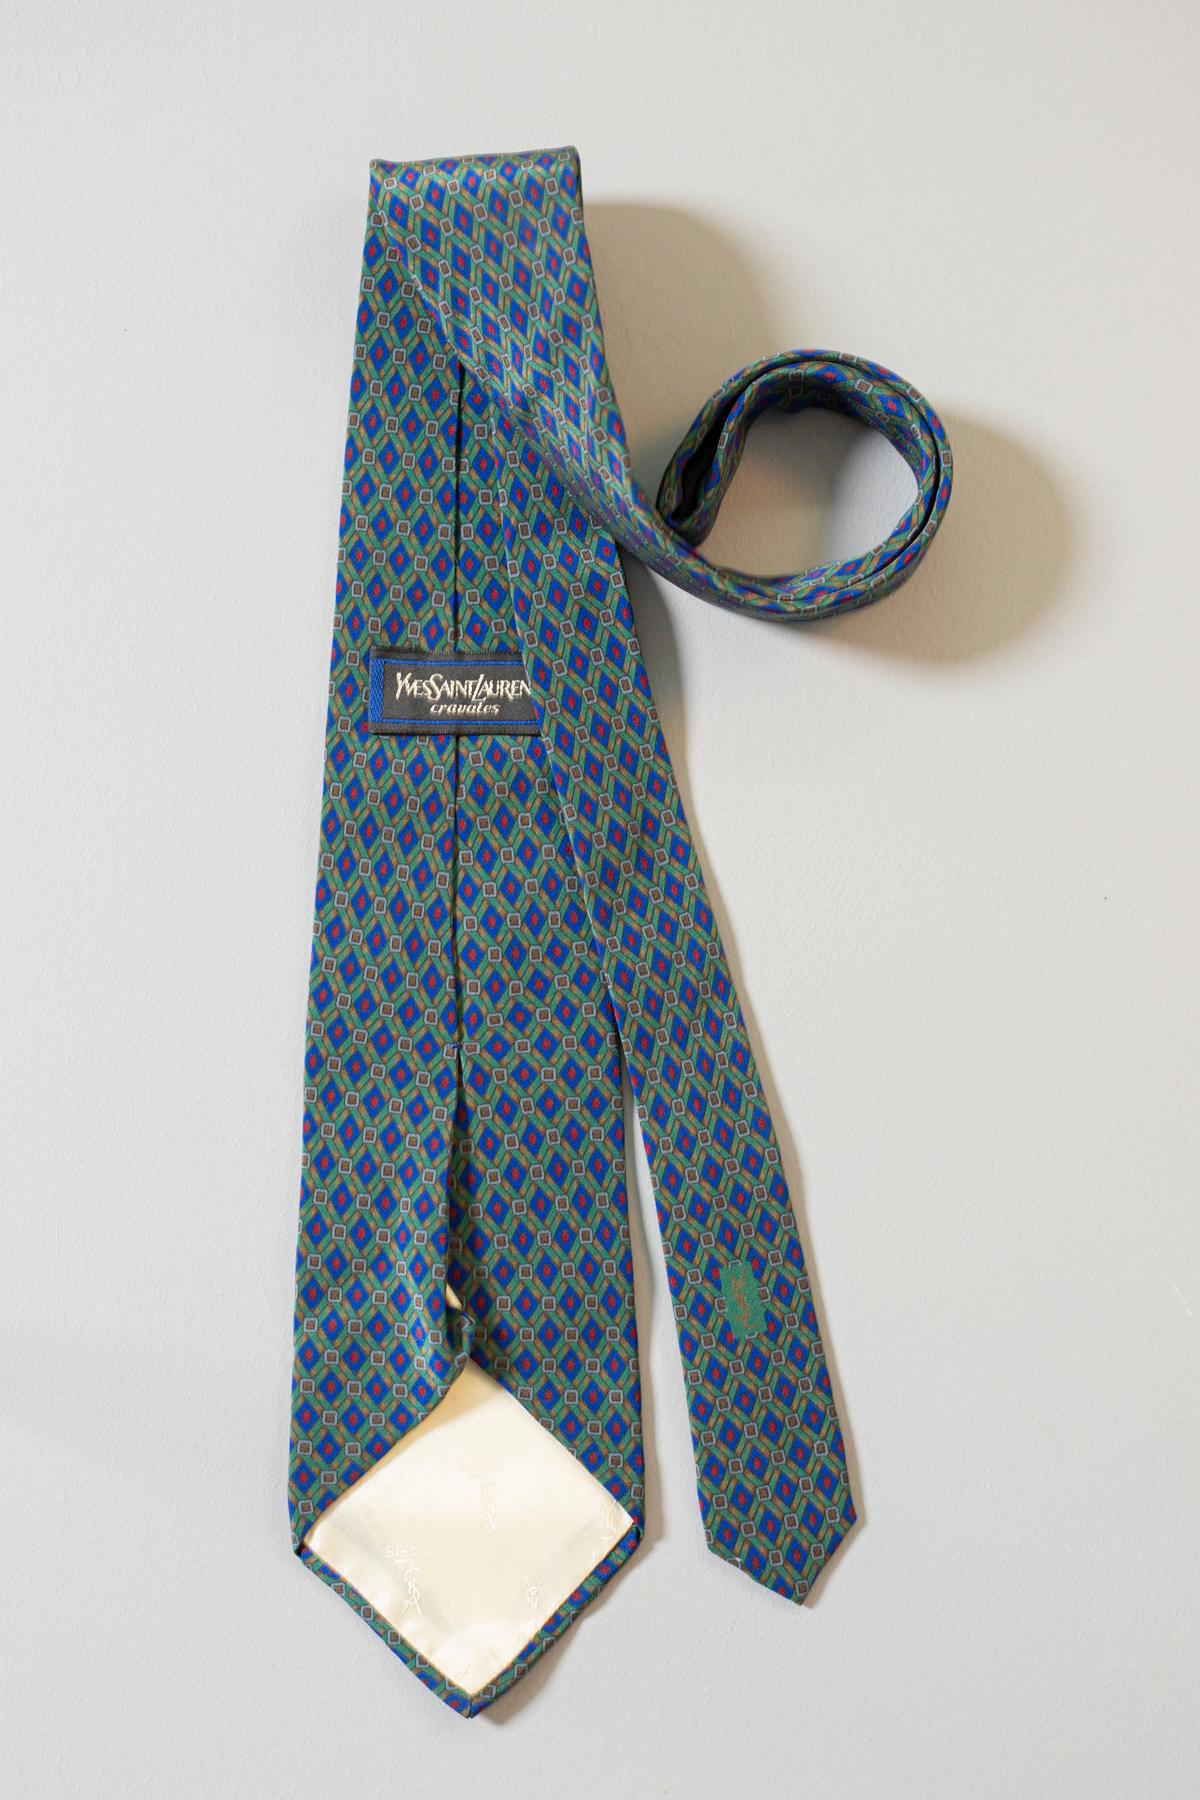 Diese feine und elegante Vintage-Krawatte wurde von Yves Saint Laurent entworfen und besteht aus reiner Seide. Die grünen, blauen und roten Motive machen diese Krawatte stilvoll und elegant. Diese Krawatte ist perfekt für jede Situation, von der